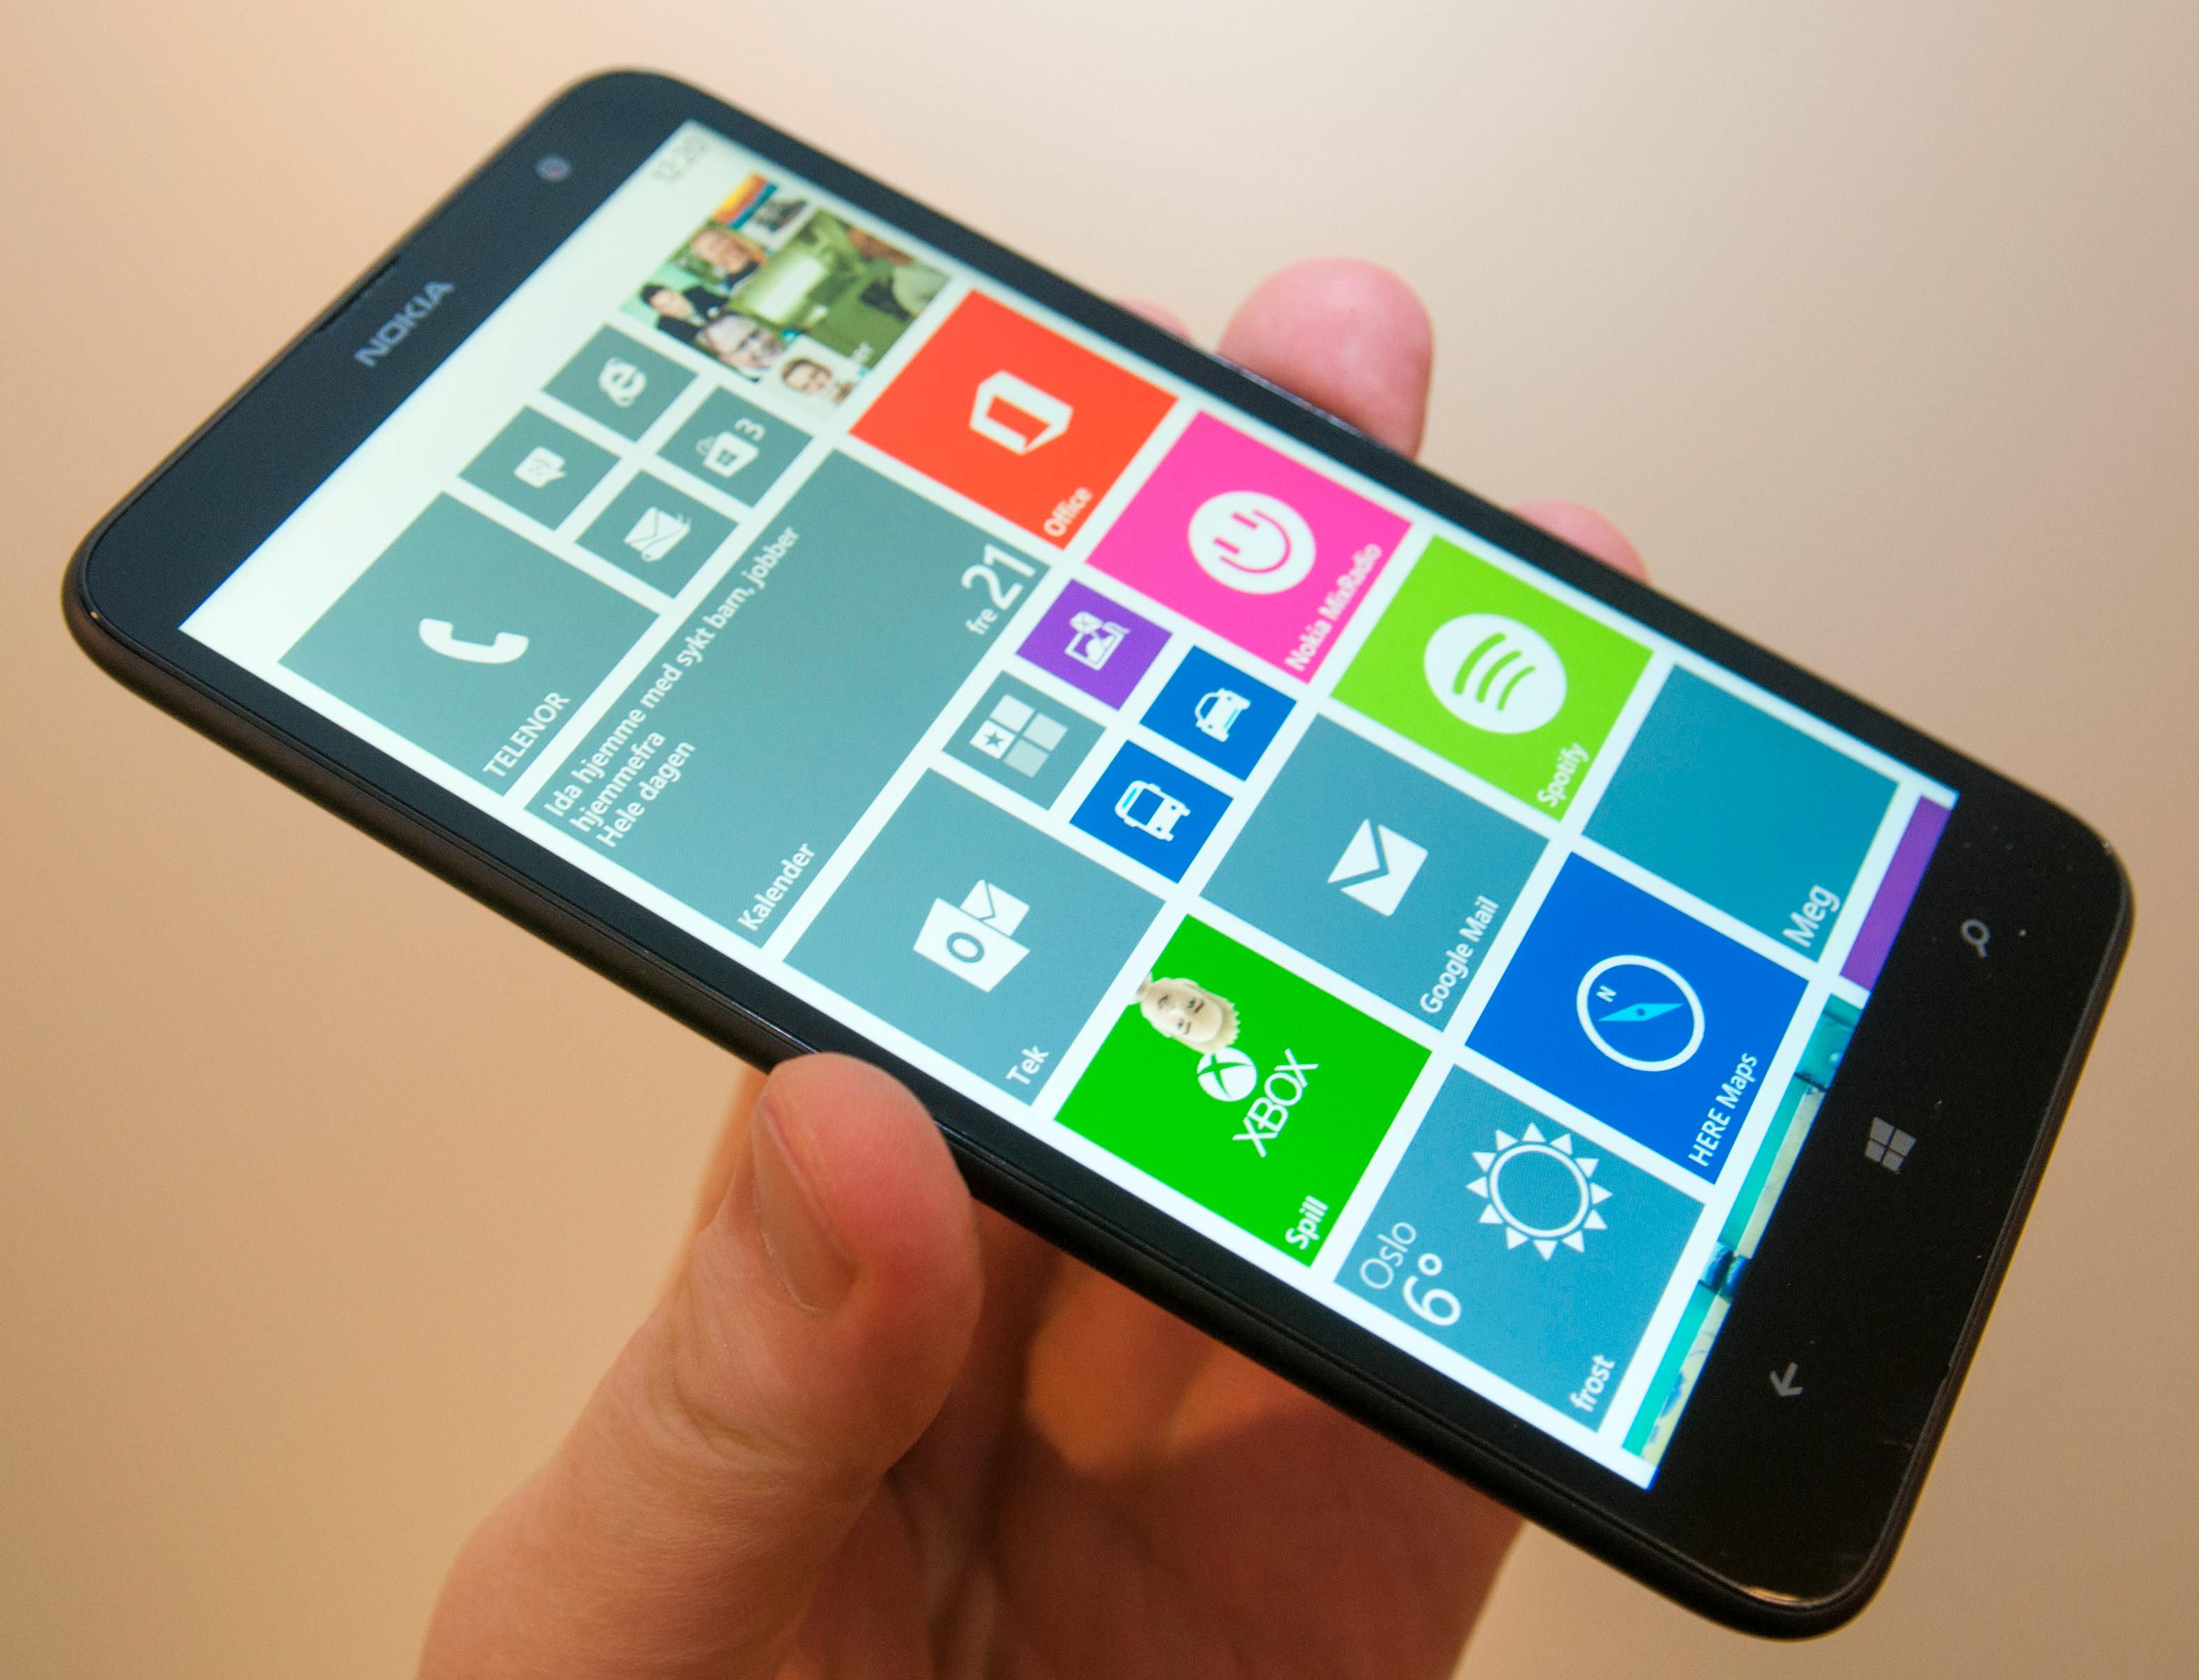 Helt siden Microsoft lanserte Windows Phone har undertegnede likt designen godt. Det er så fargerikt og pent, at det tilfører litt utsmykking til telefoner som ellers ser litt kjedelige ut.Foto: Finn Jarle Kvalheim, Amobil.no